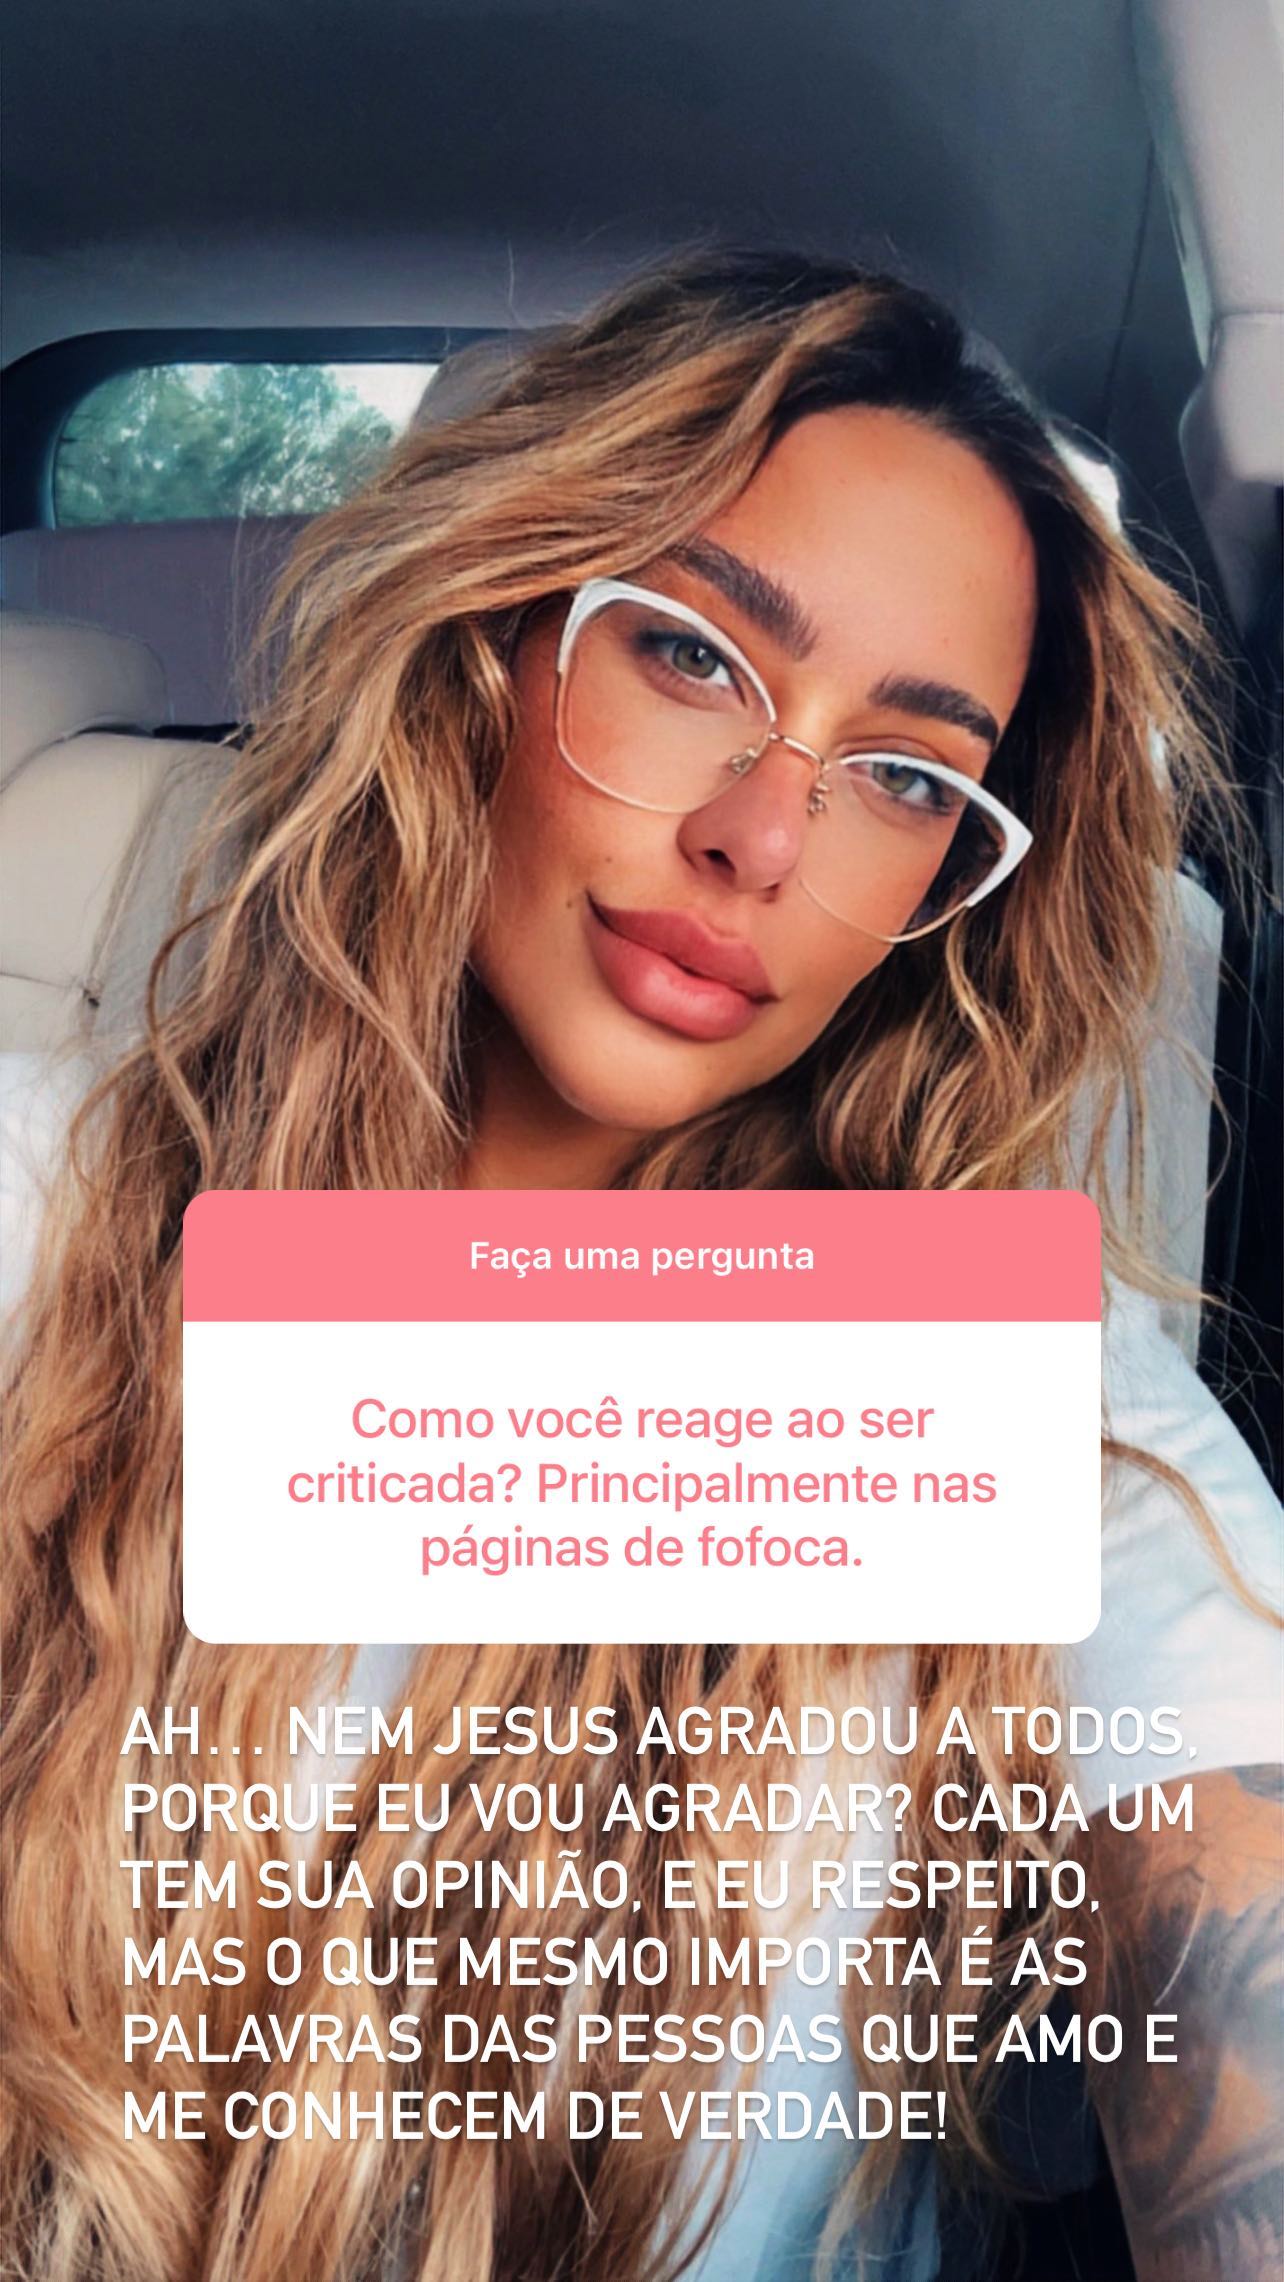 Rafaella Santos falou sobre casamento, filhos e ciúmes em conversa com os seguidores - Foto: Reprodução/ Instagram@rafaella